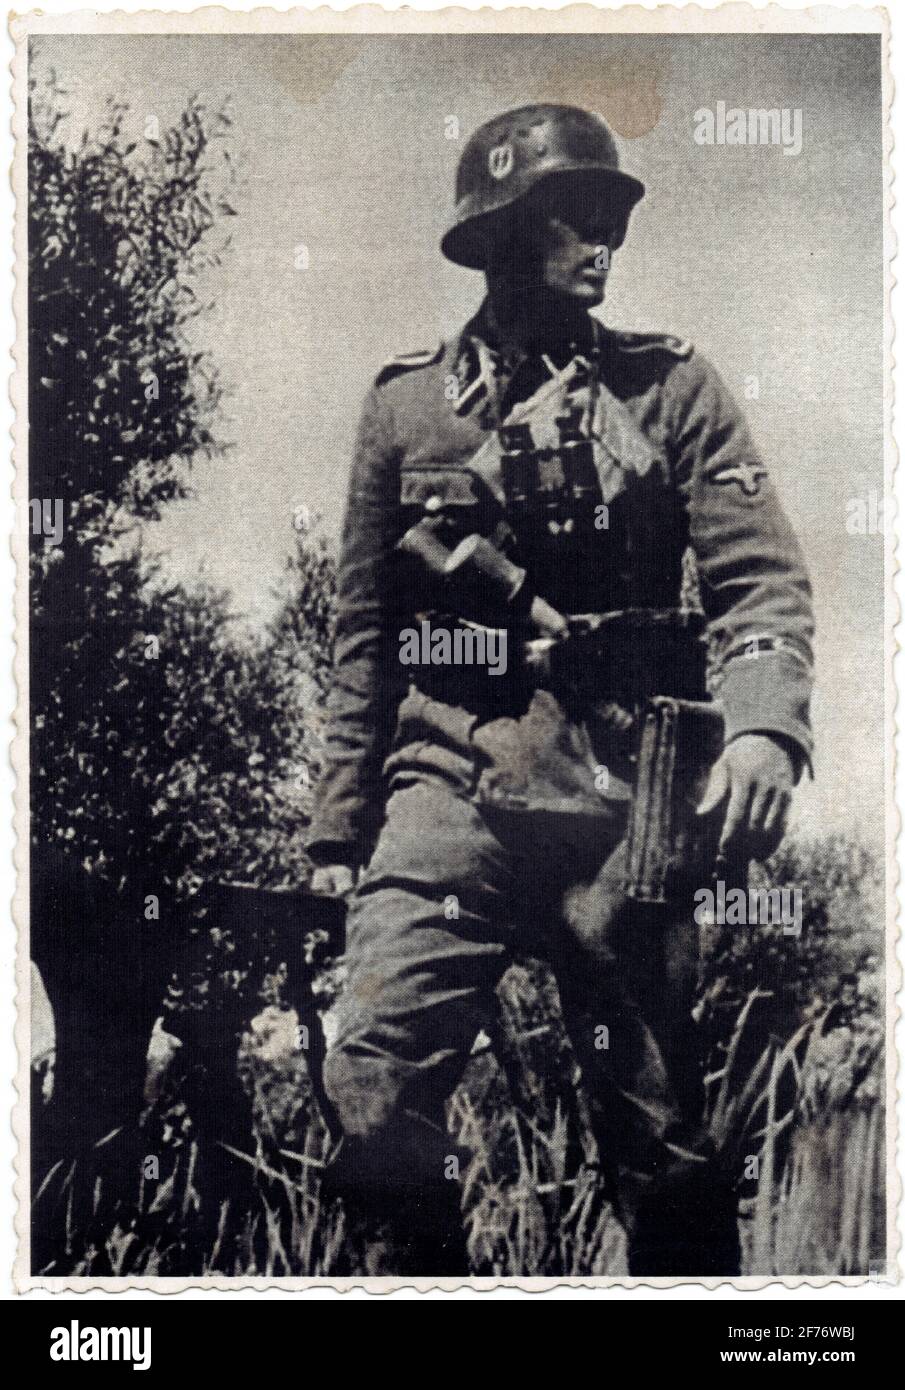 sous-officier de la Waffen SS Stock Photo